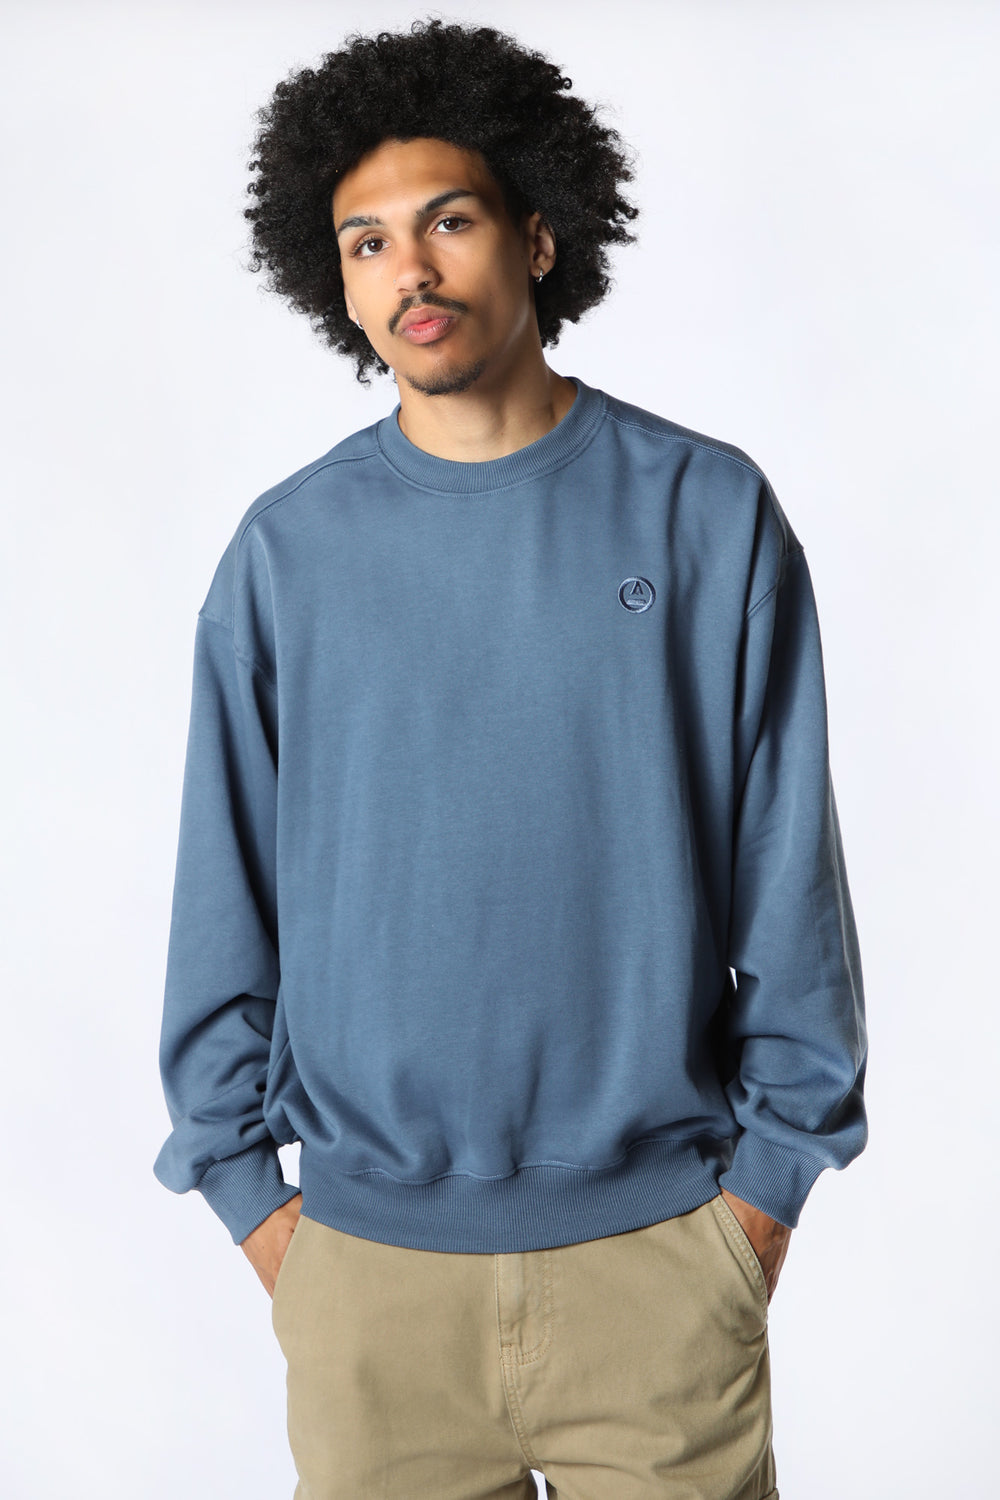 Amnesia Mens Solid Crew Sweatshirt Medium Denim Blue